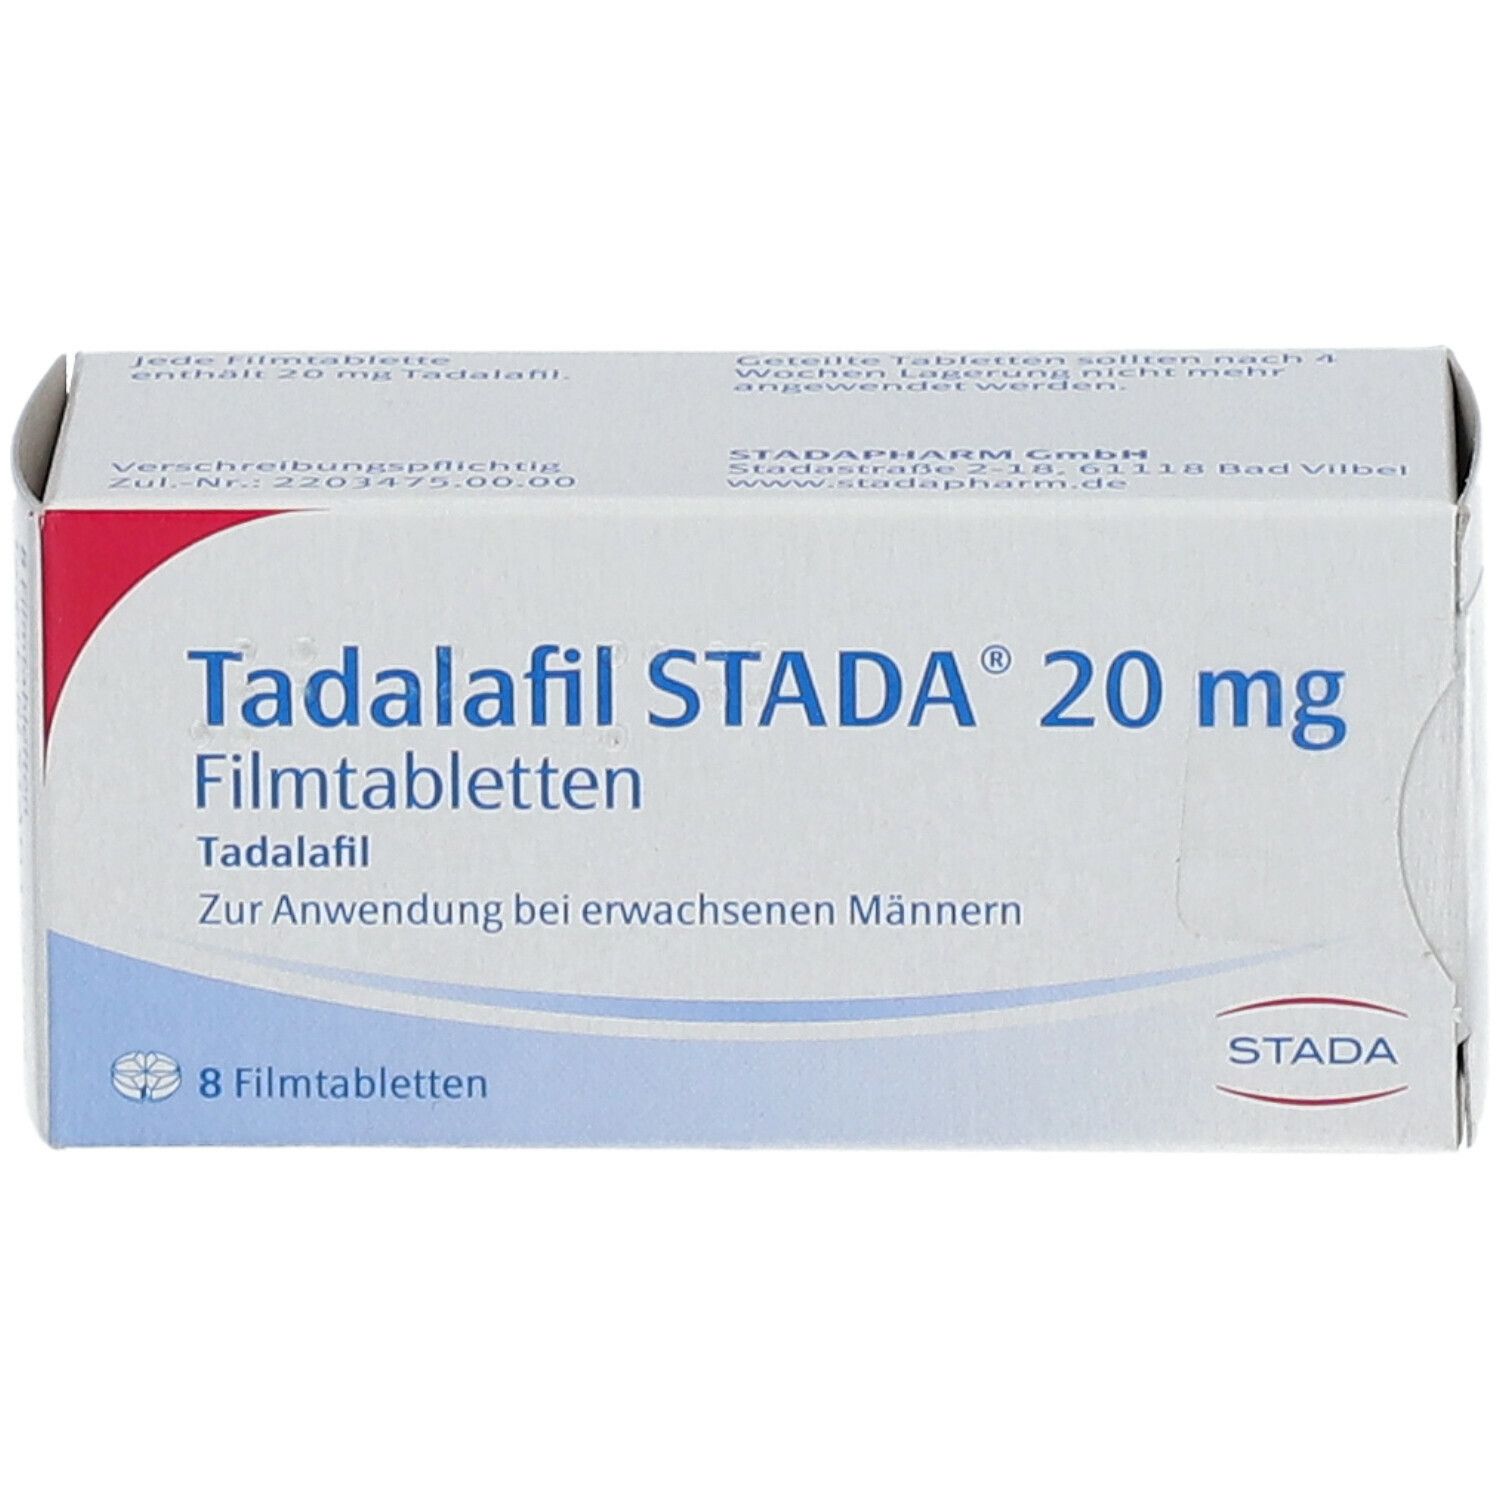 Tadalafil STADA® 20 mg